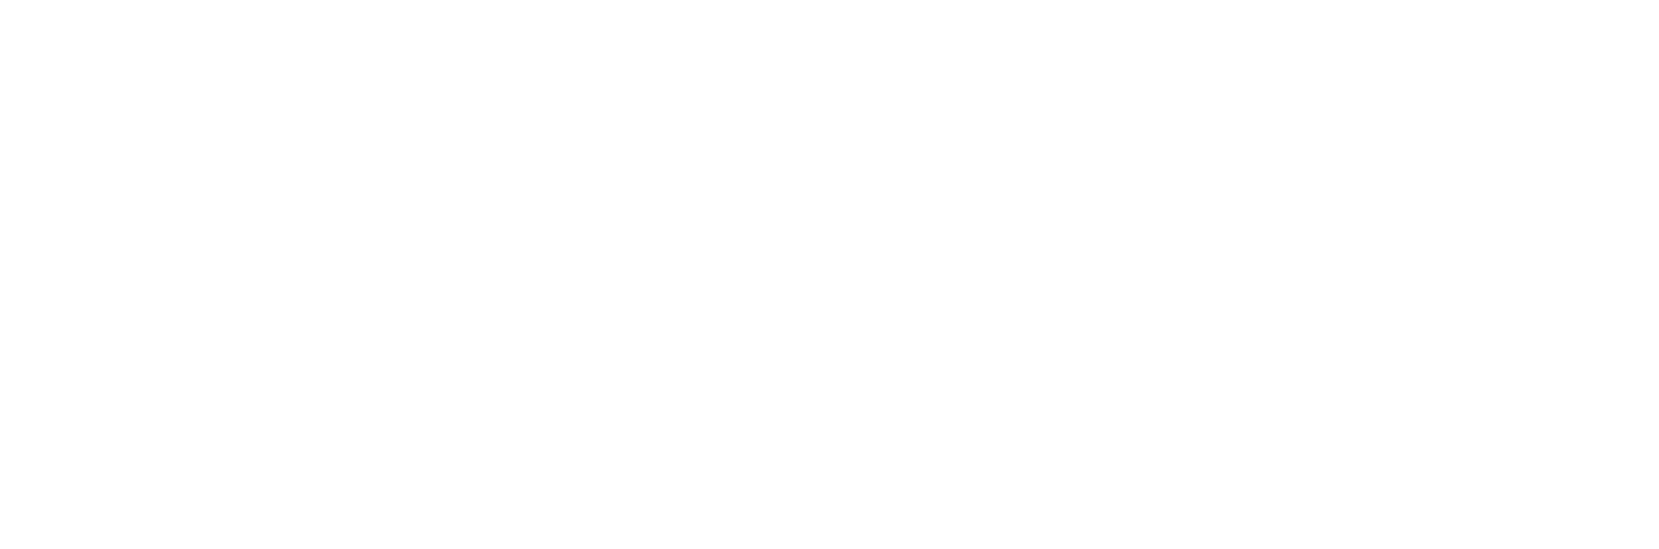 Representative Colin Allred